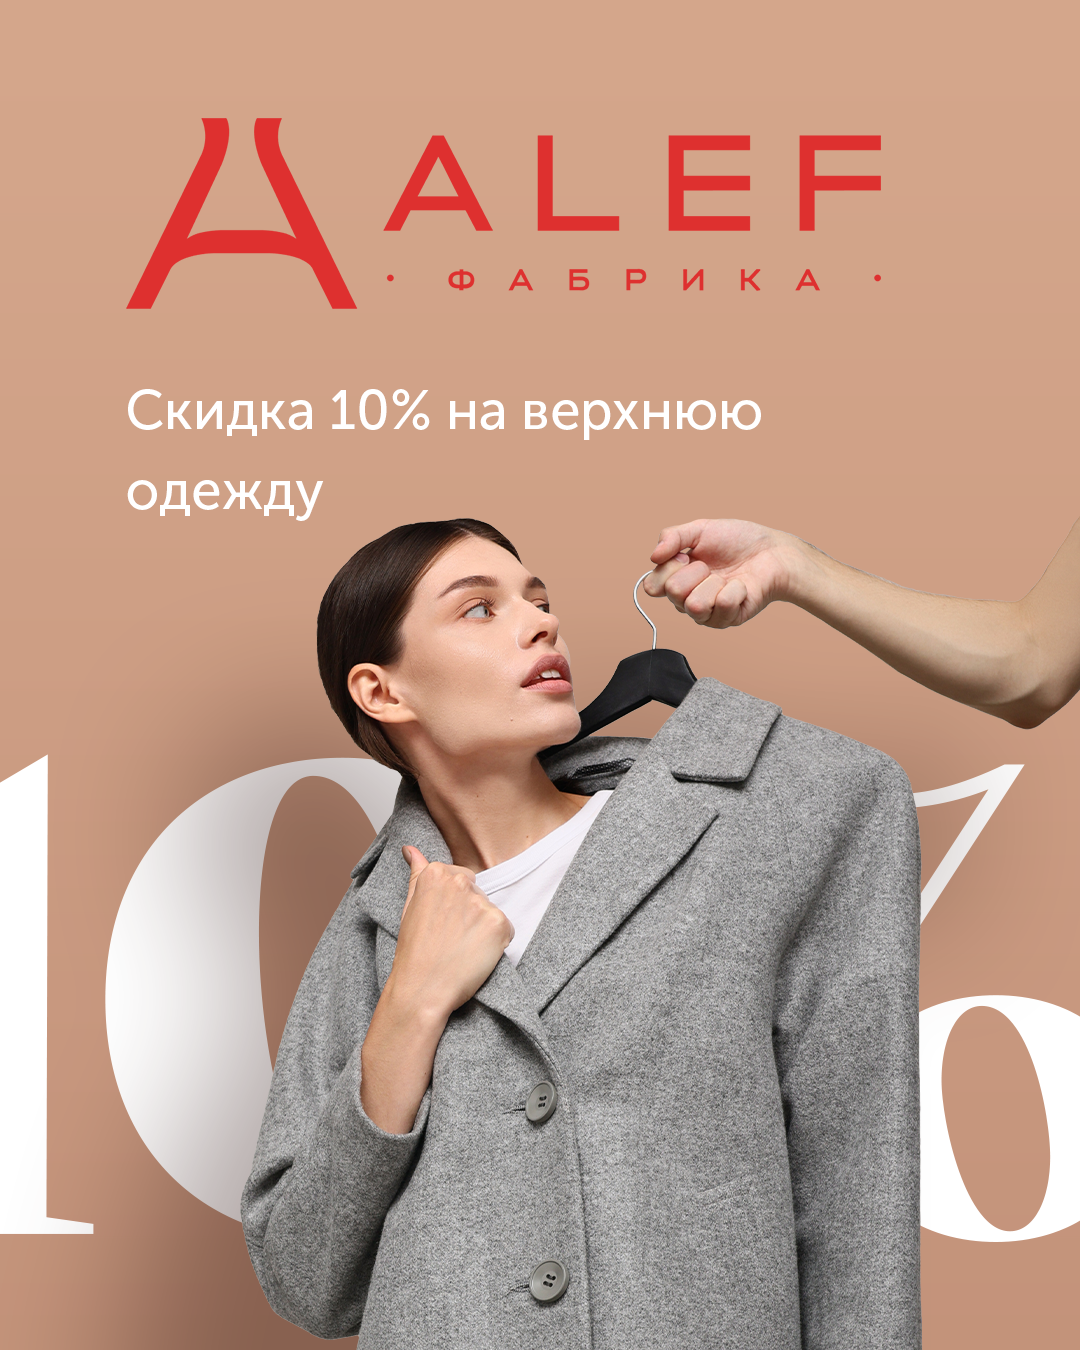 Скидка 10% на верхнюю одежду от фабрики "ALEF"!